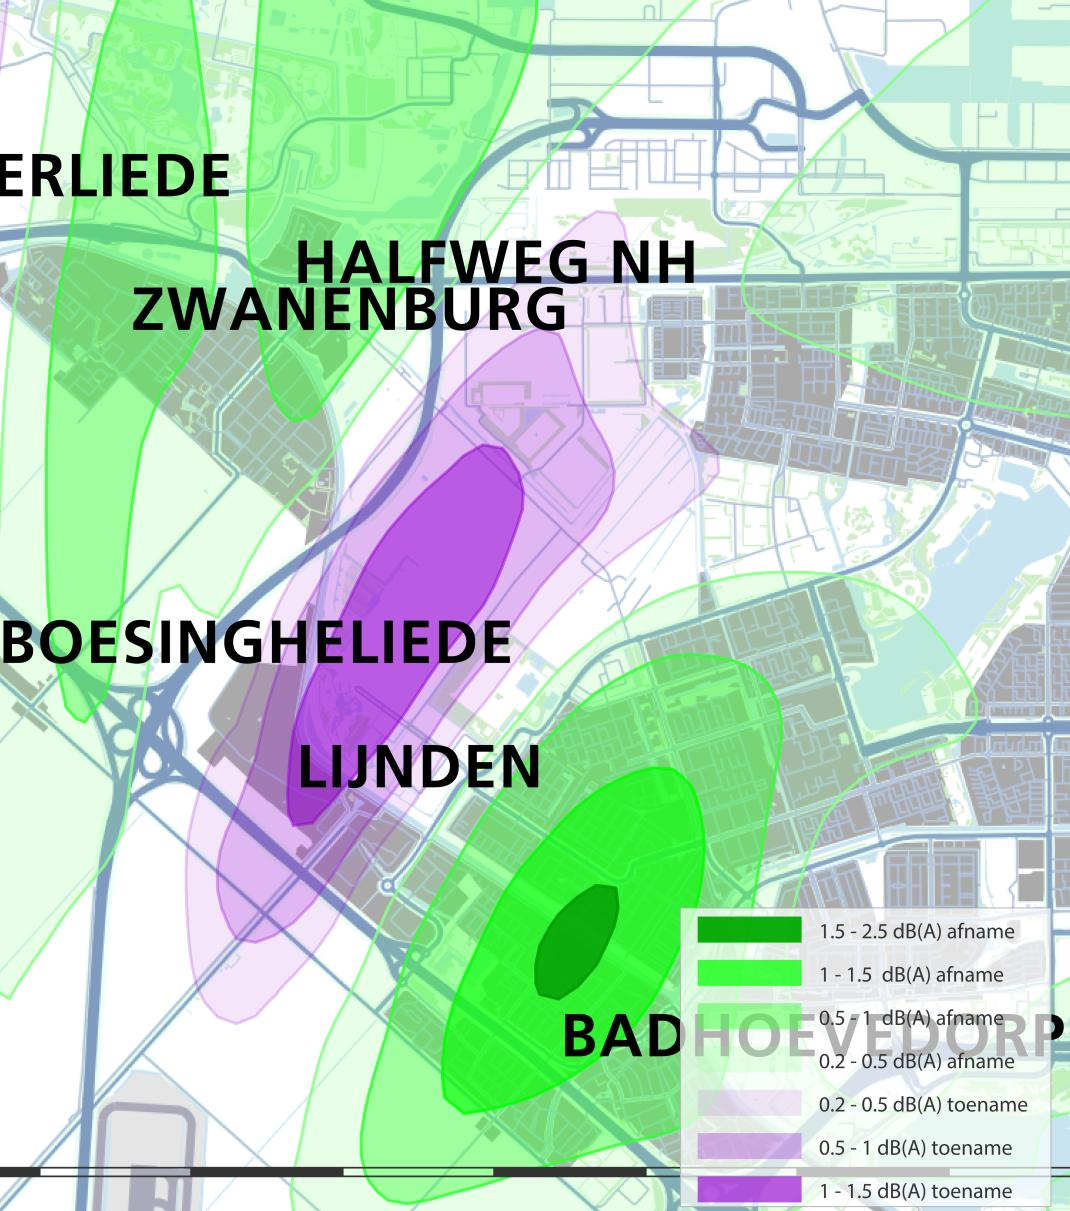 Detailkaart effecten geluidbelasting L den Lijnden/ Badhoevedorp (100% NADP2, 510K) B Toename EGH Afname EGH Per saldo Haarlemmerweg A dam- Geuzenveld/ Slotermeer Lijnden +14-1 +13 Boesingheliede 0-1